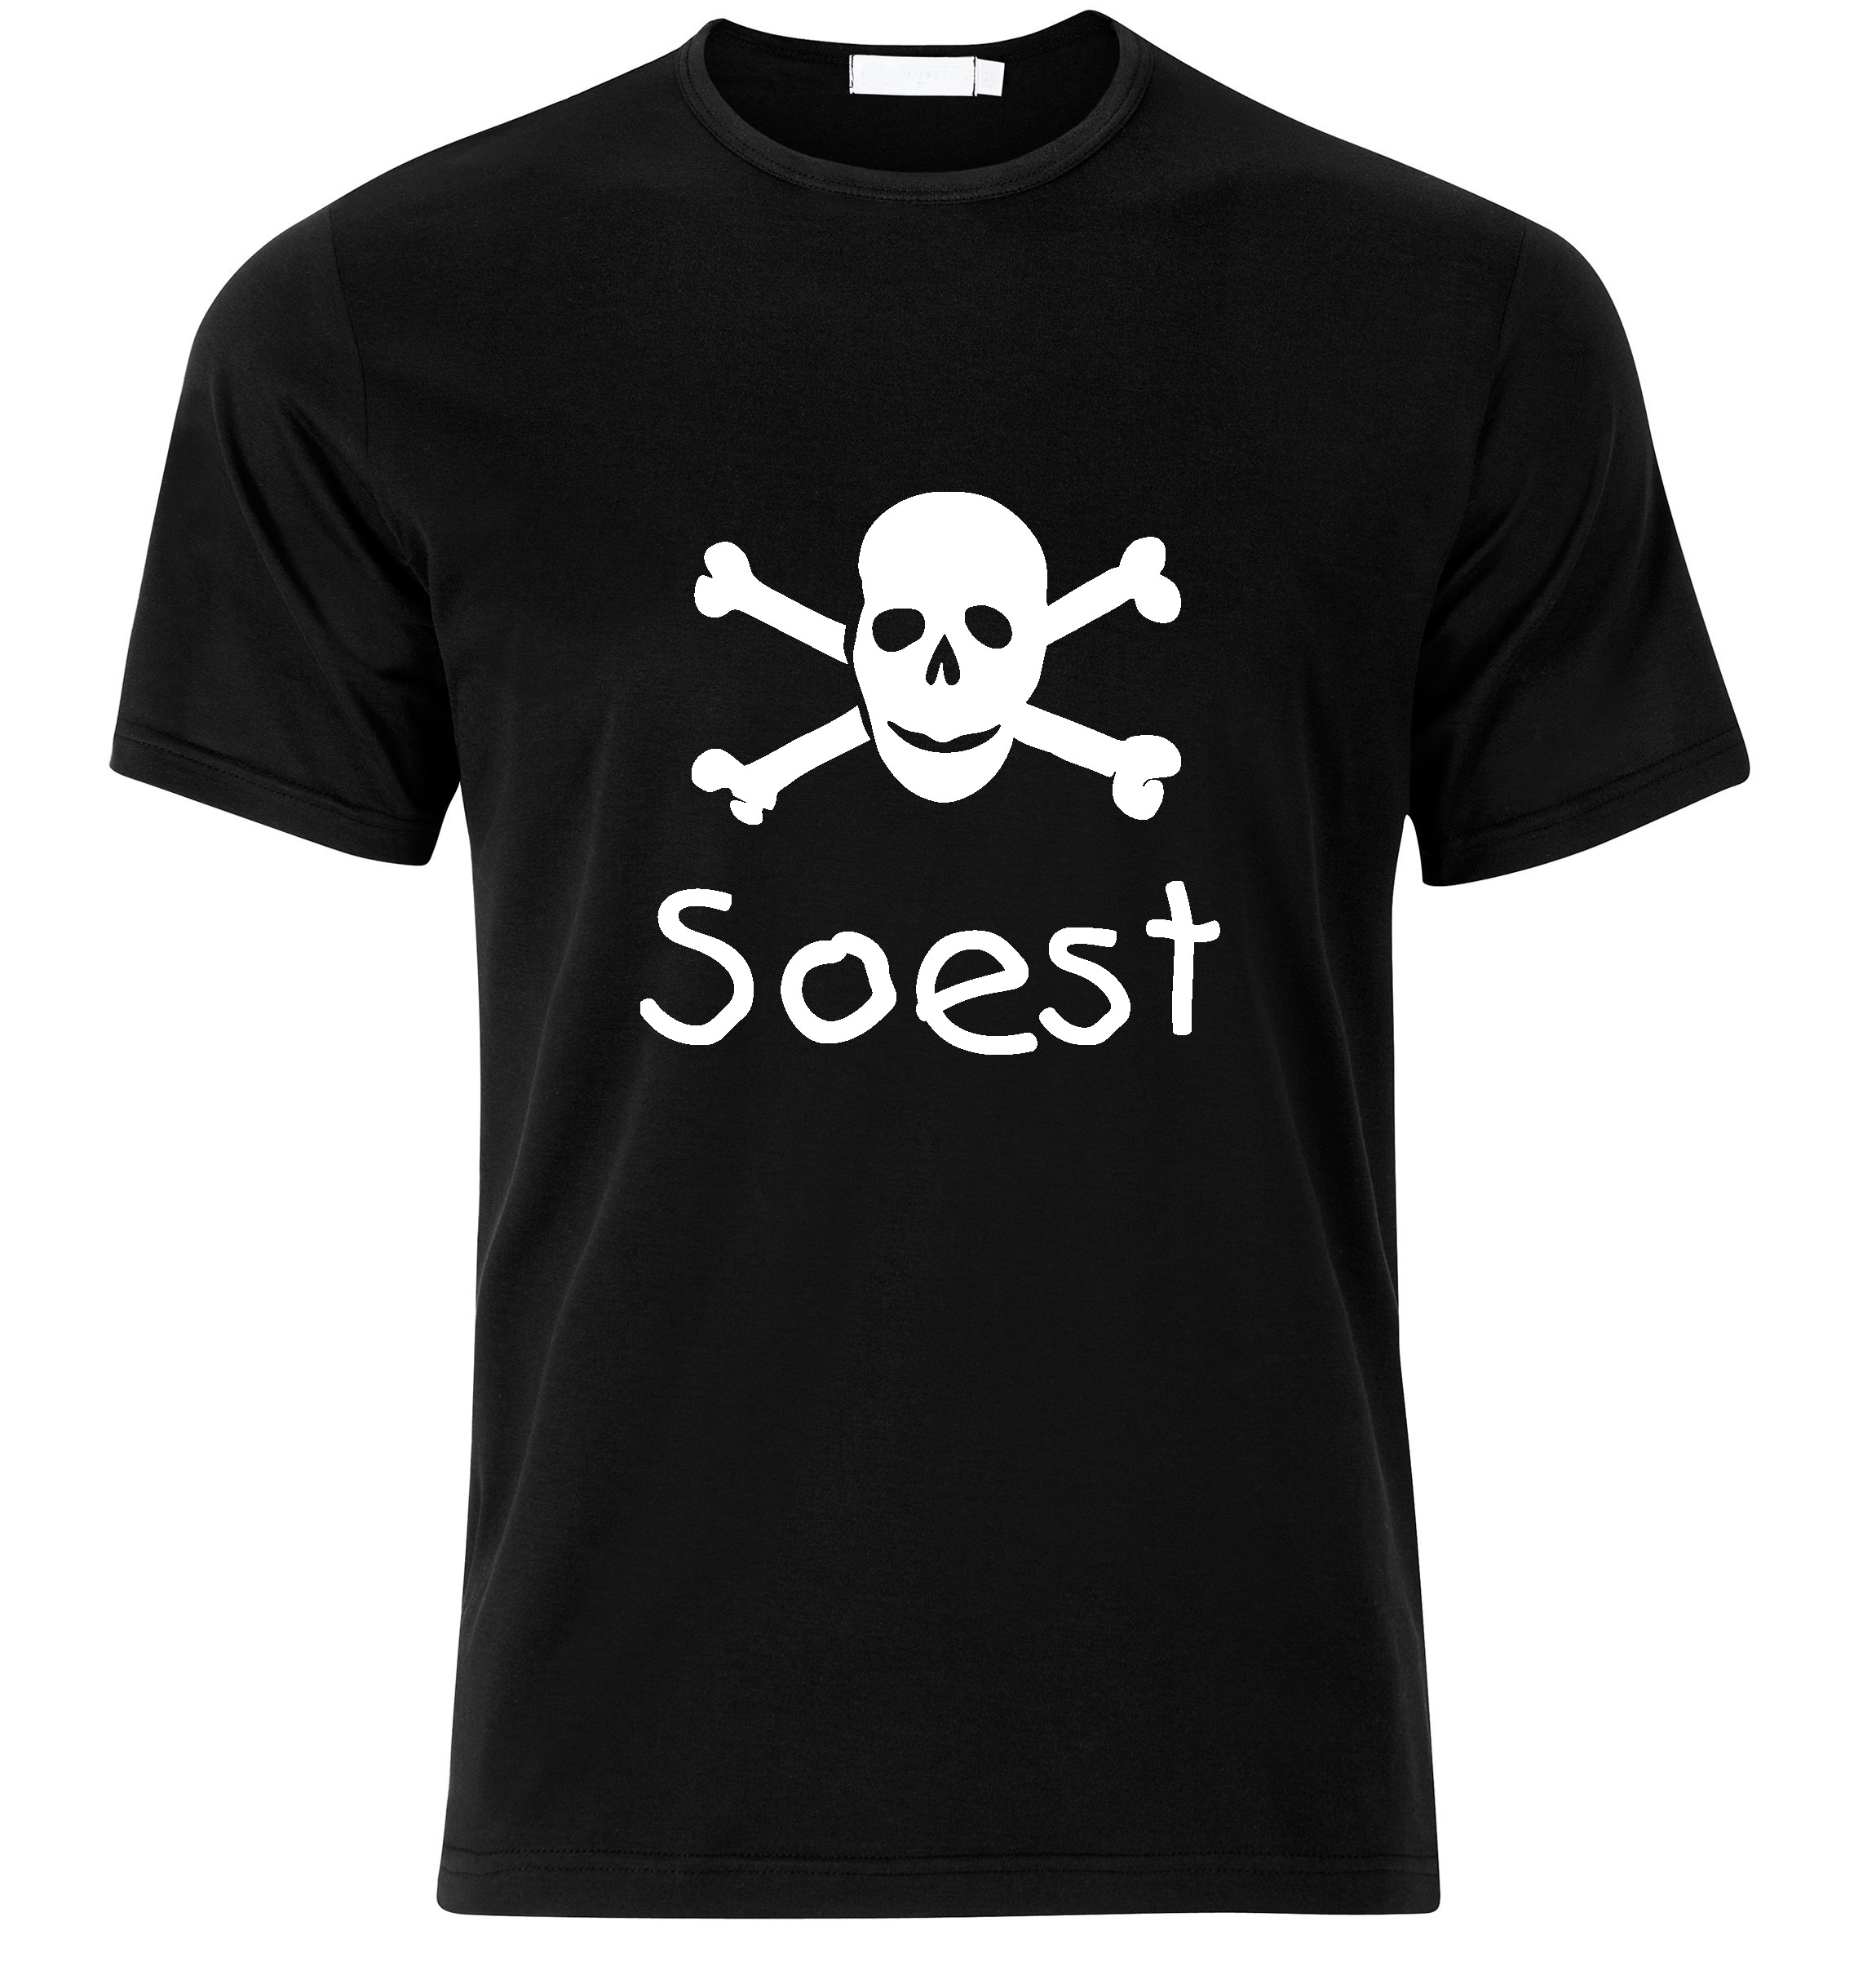 T-Shirt Soest Jolly Roger, Totenkopf